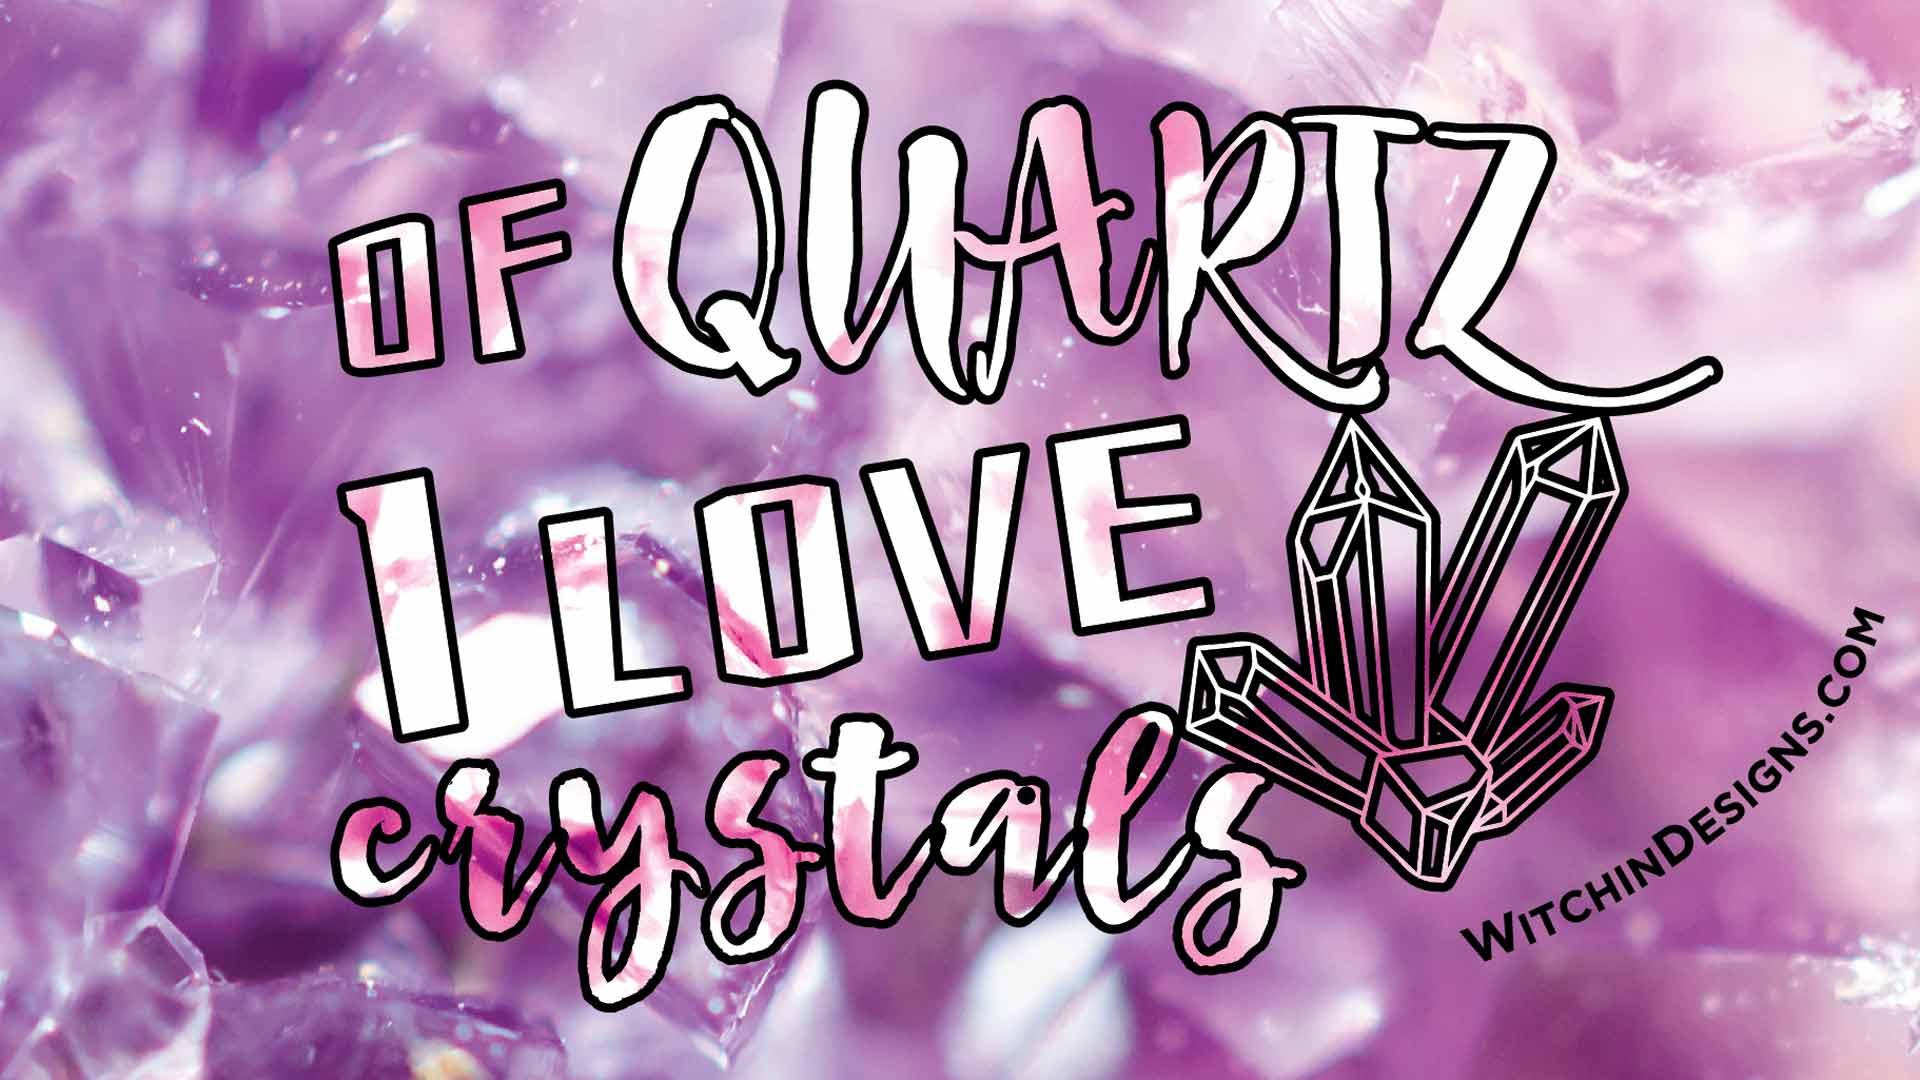 Of Quartz I Love Crystals